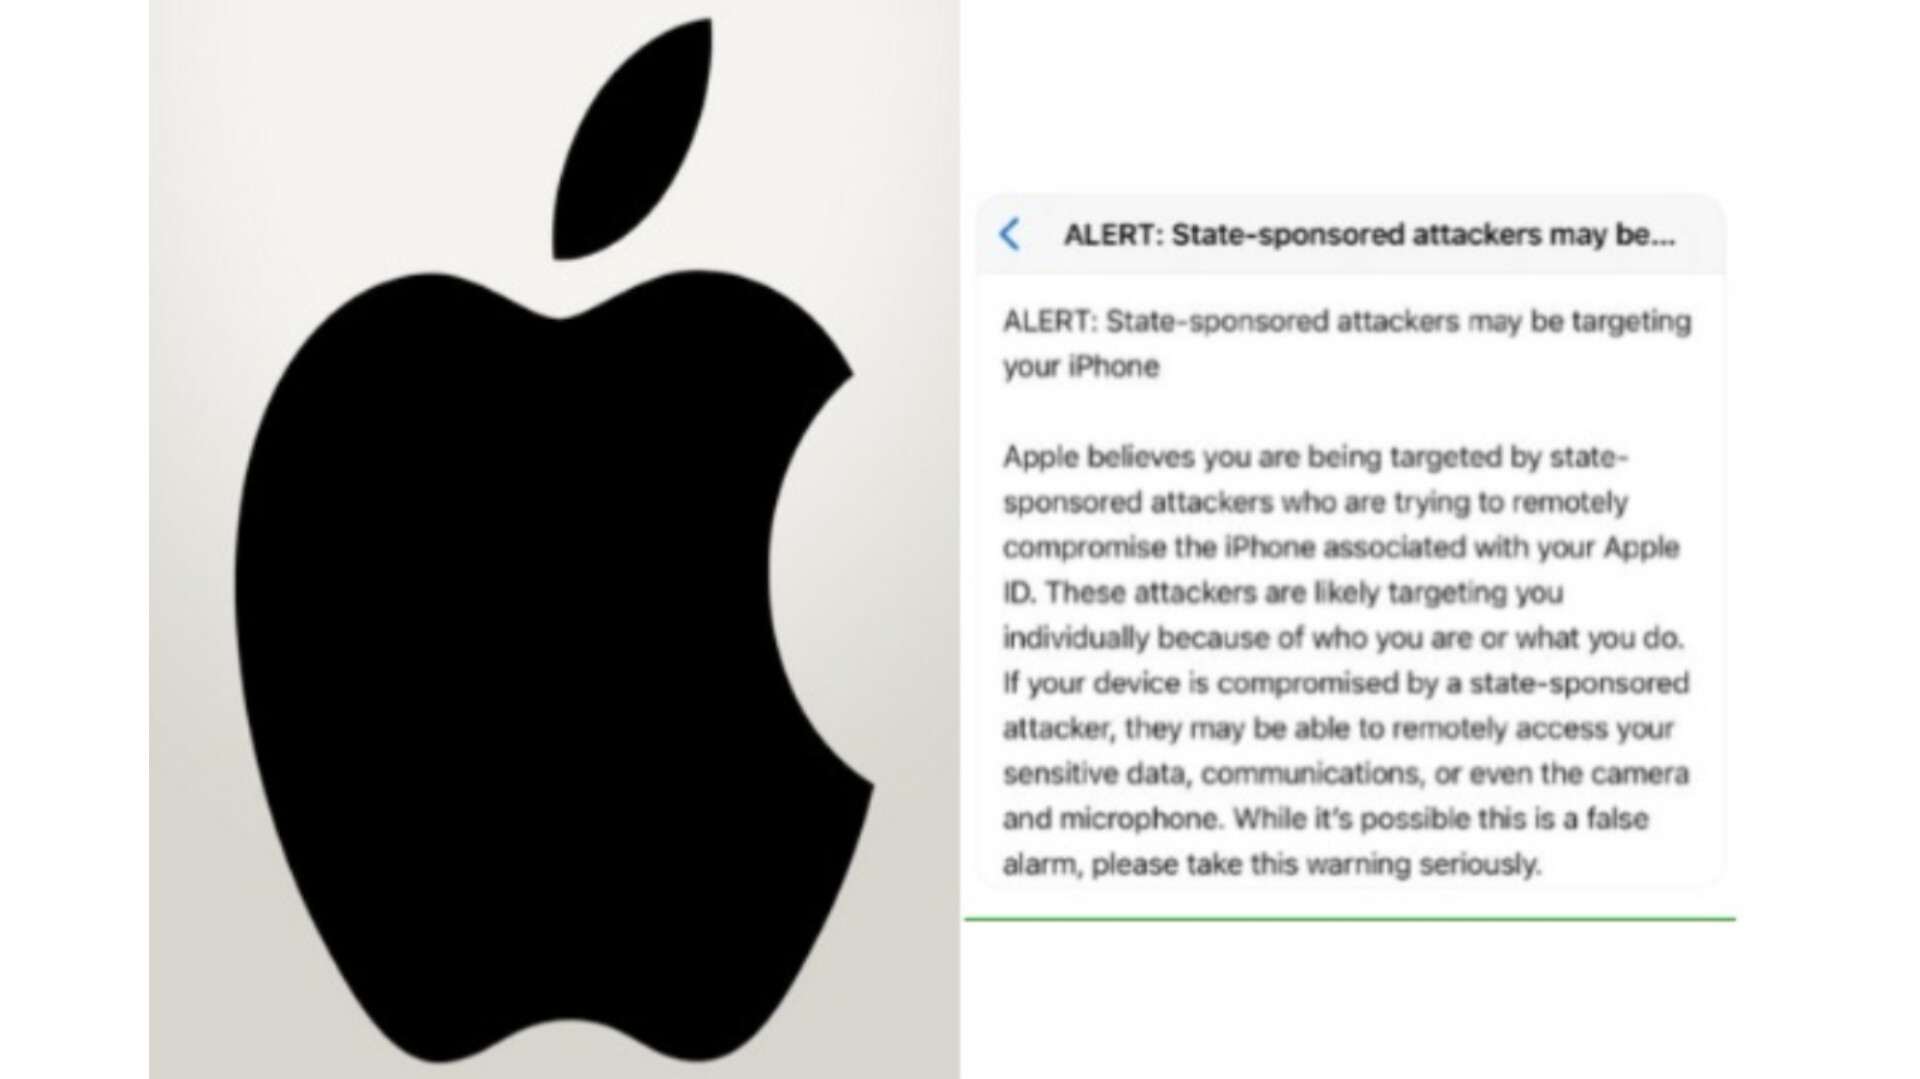 फोन अलर्ट विवाद: विपक्षी नेताओं के 'जासूसी' वाले दावे पर 'एप्पल' ने जारी किया बयान